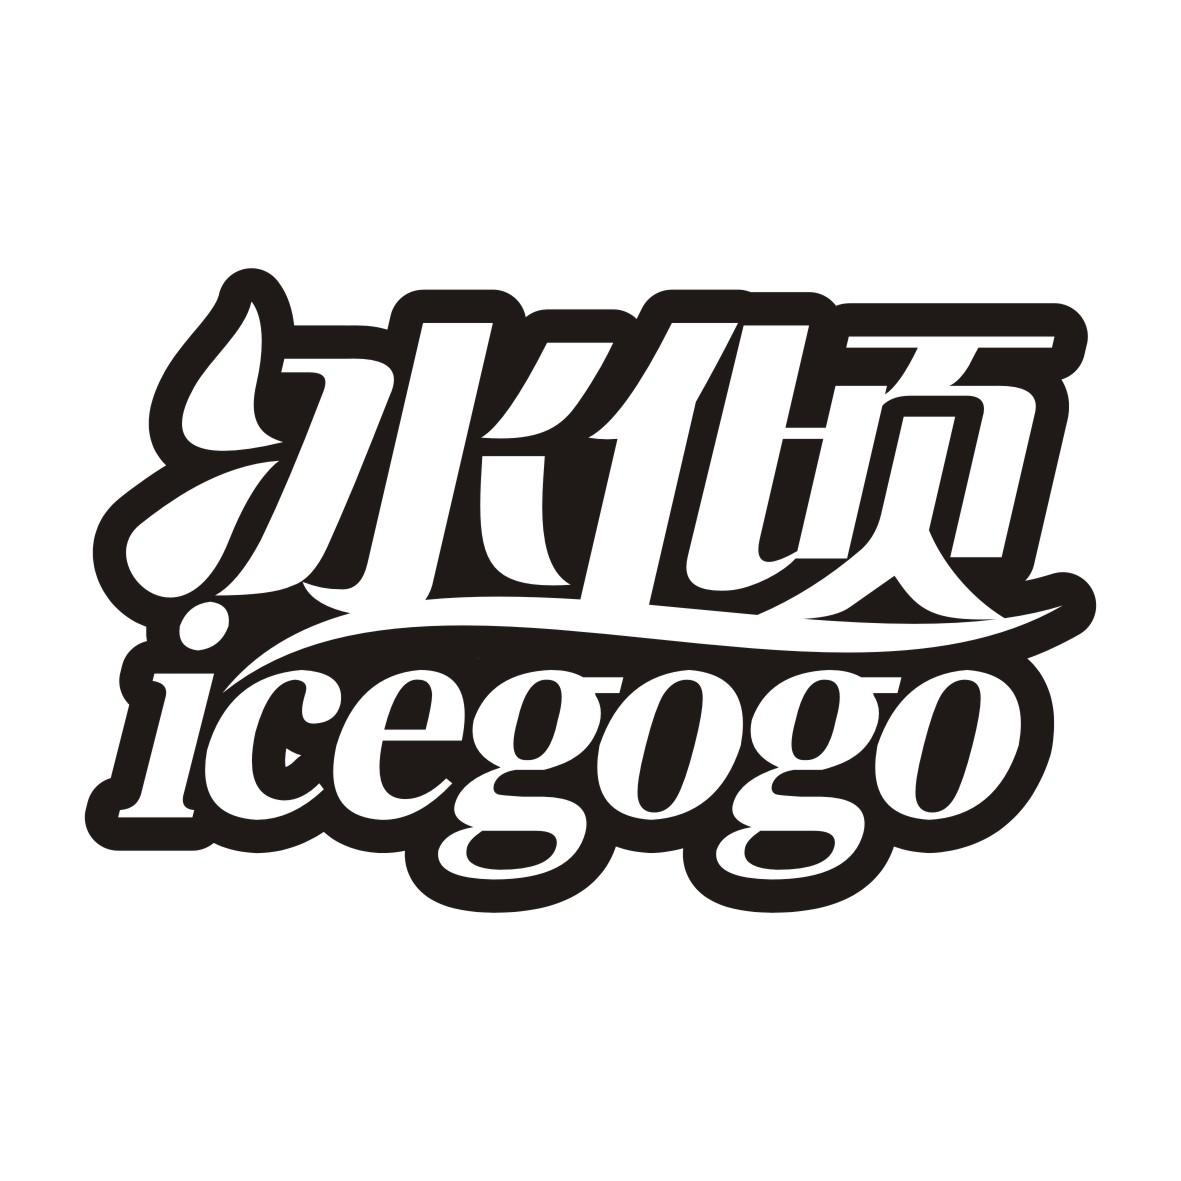   ICEGOGO